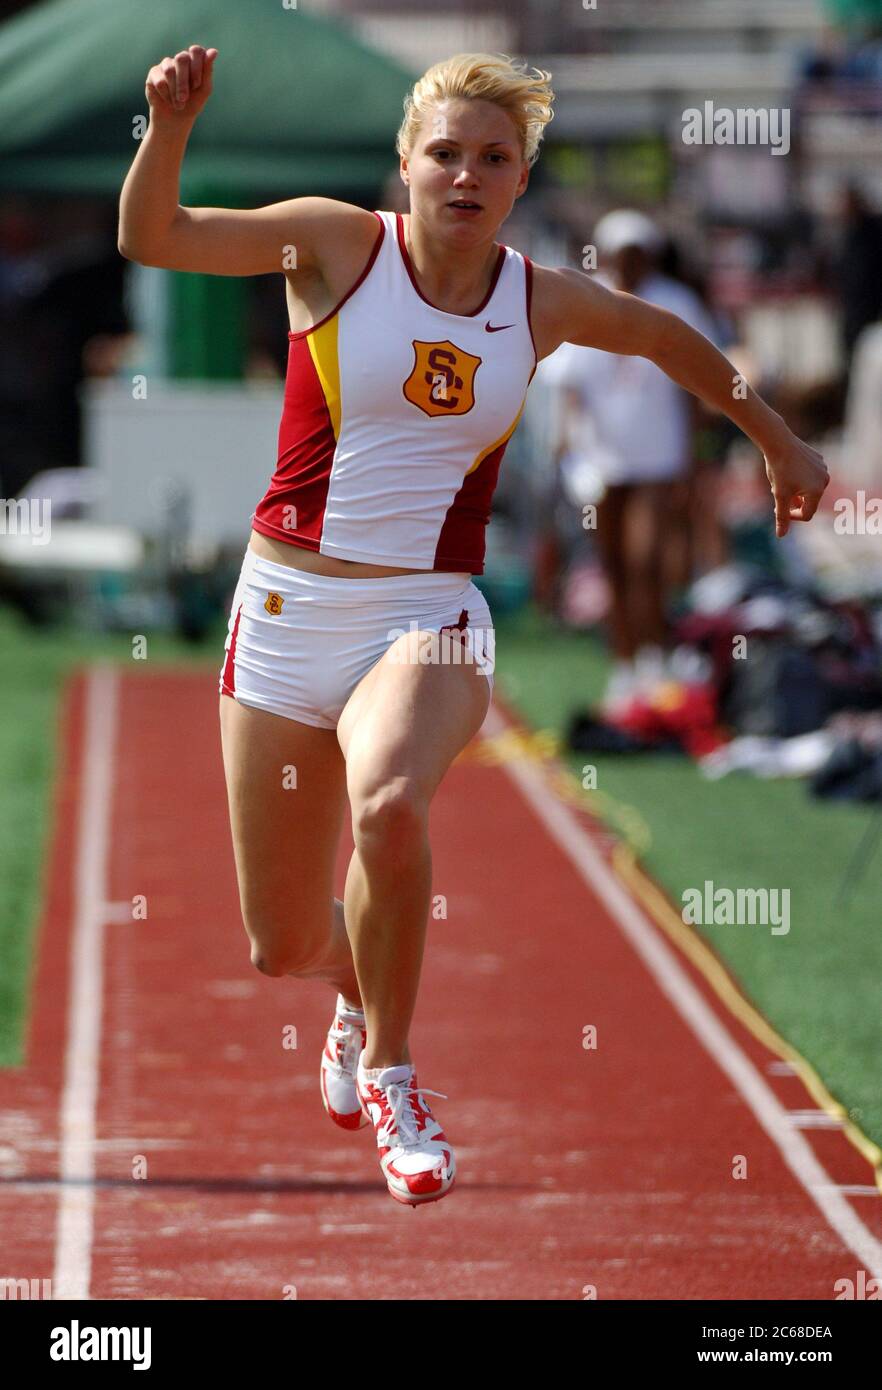 Los Angeles, Estados Unidos. 1 de abril de 2006. Katarzyna Klisowska de USC fue quinto en el triple salto a 38-3 1/2 (11,67m) en el Cardinal & Gold Invitational en Cromwell Field en los Ángeles el sábado, 1 de abril de 2006. Foto a través de crédito: Newscom/Alamy Live News Foto de stock